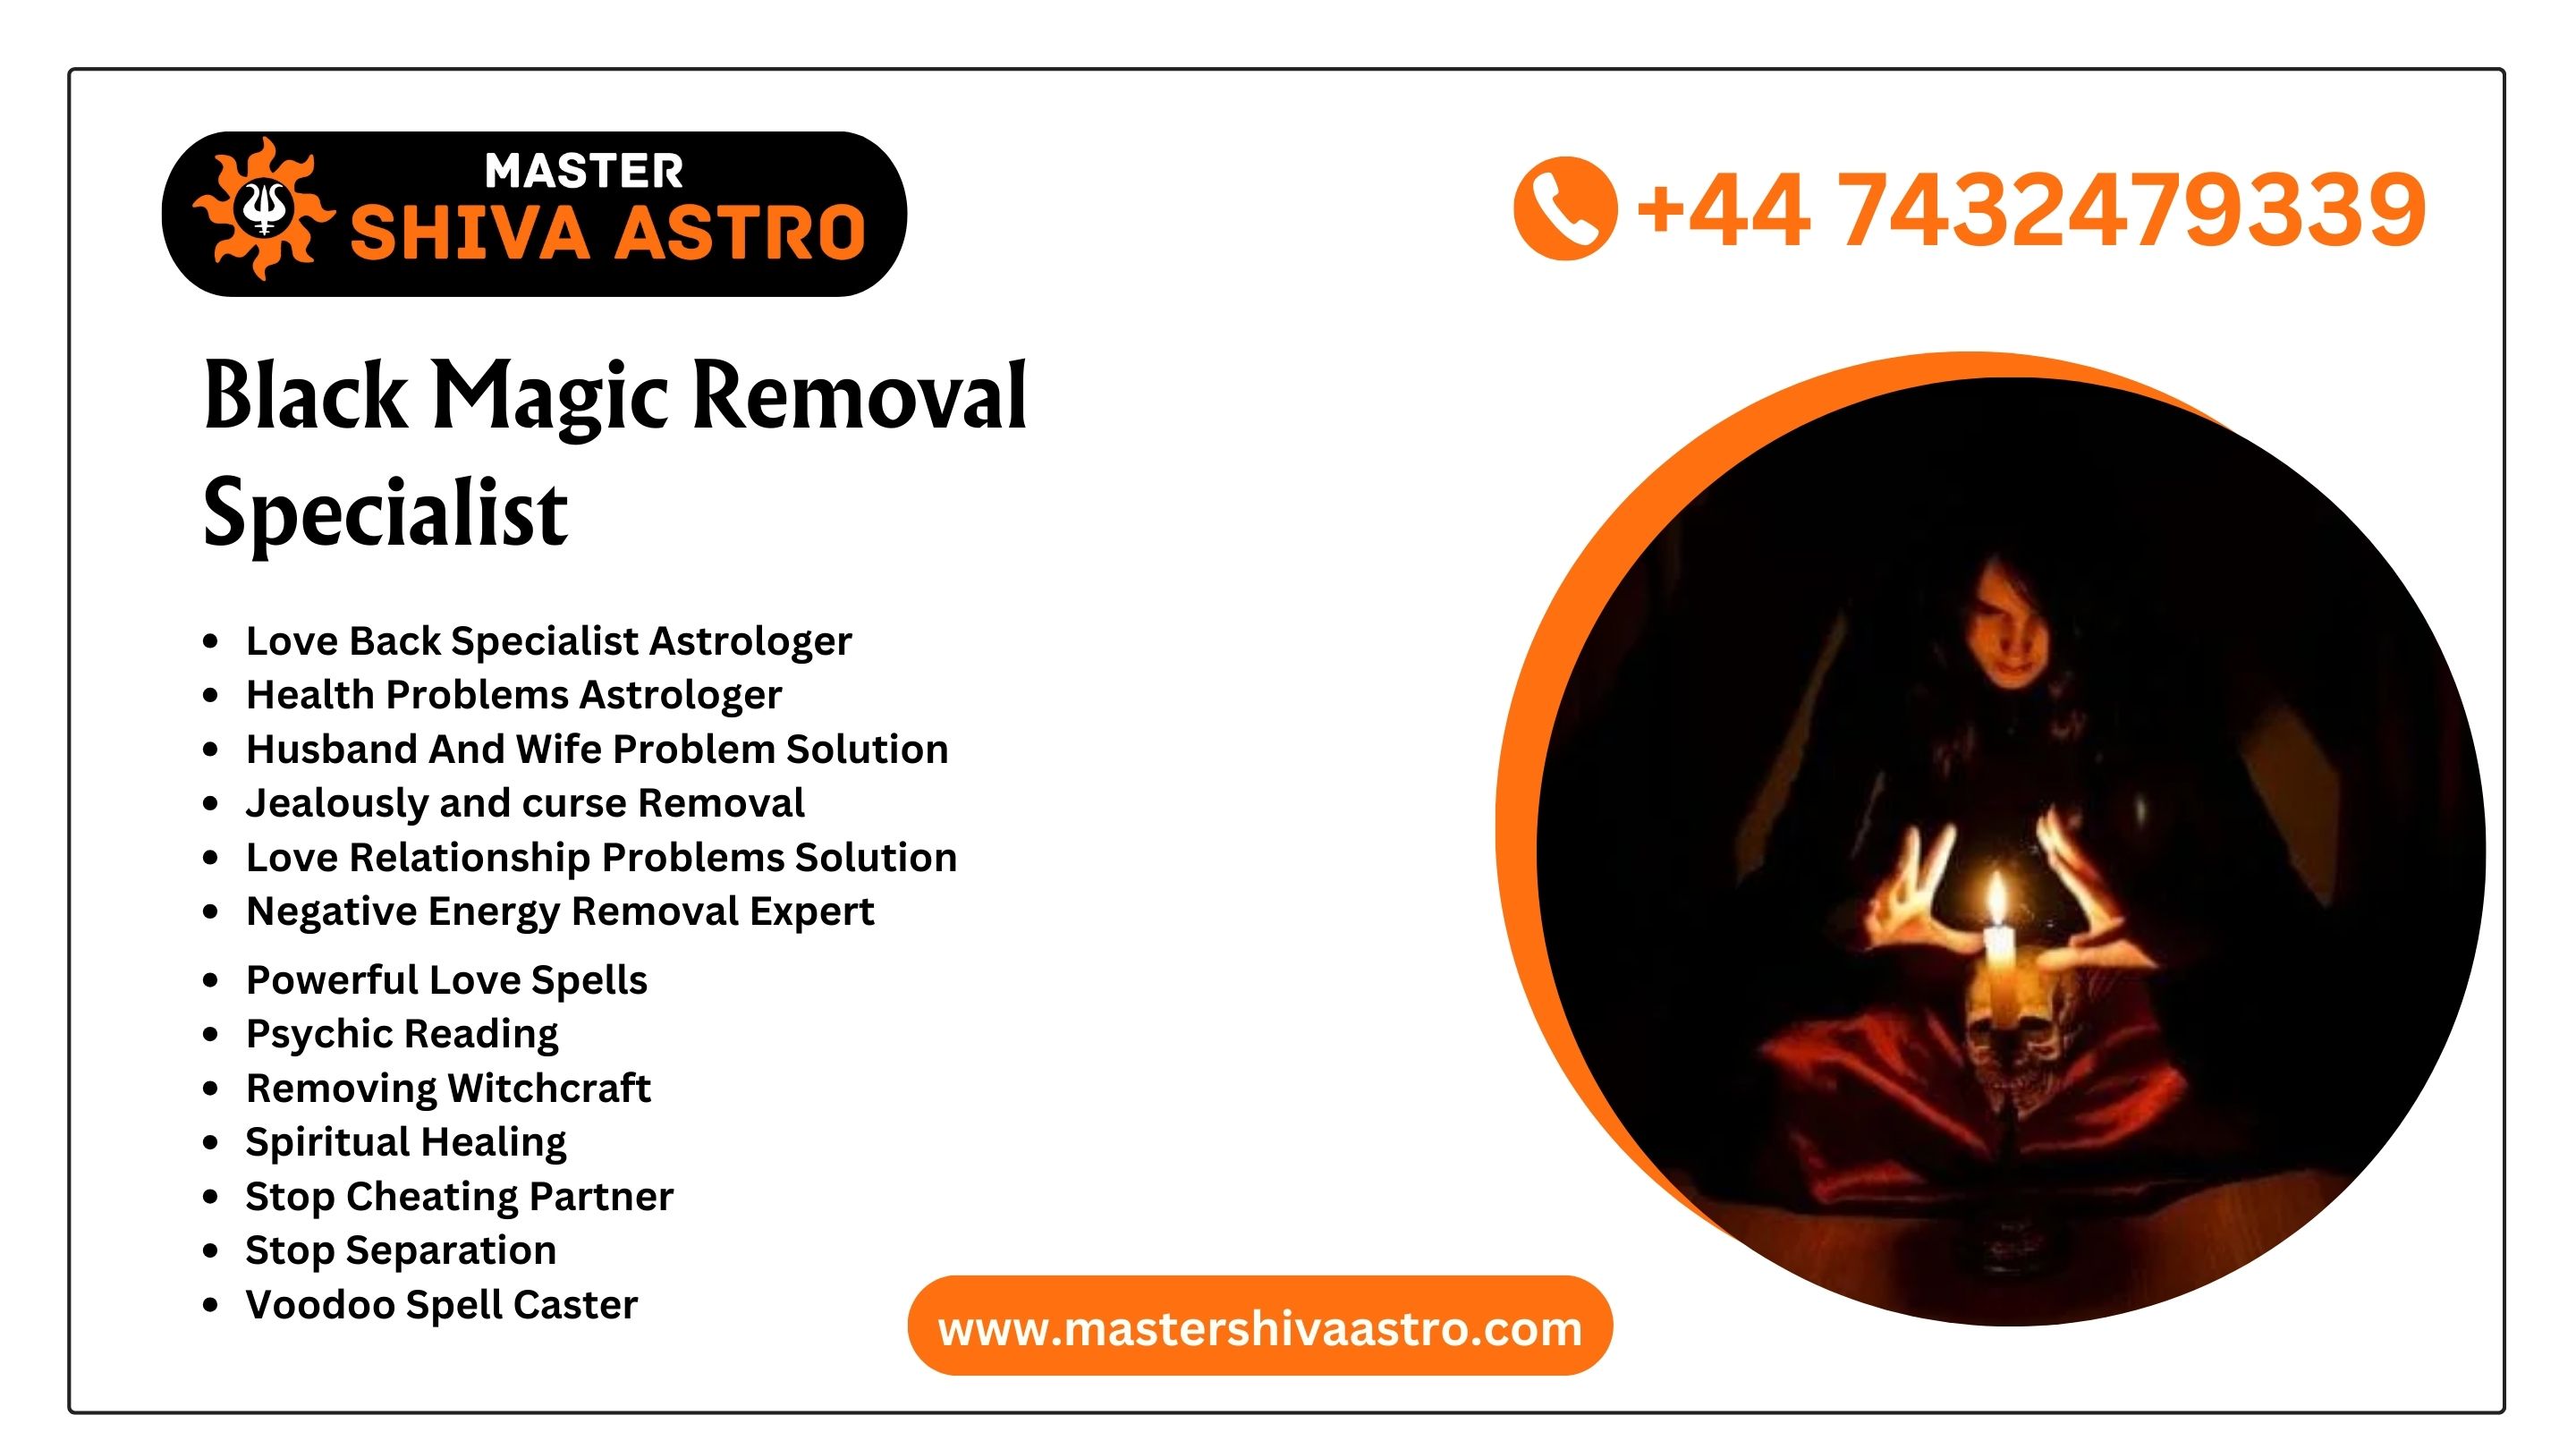 Black Magic Removal Specialist  - Master Shiva